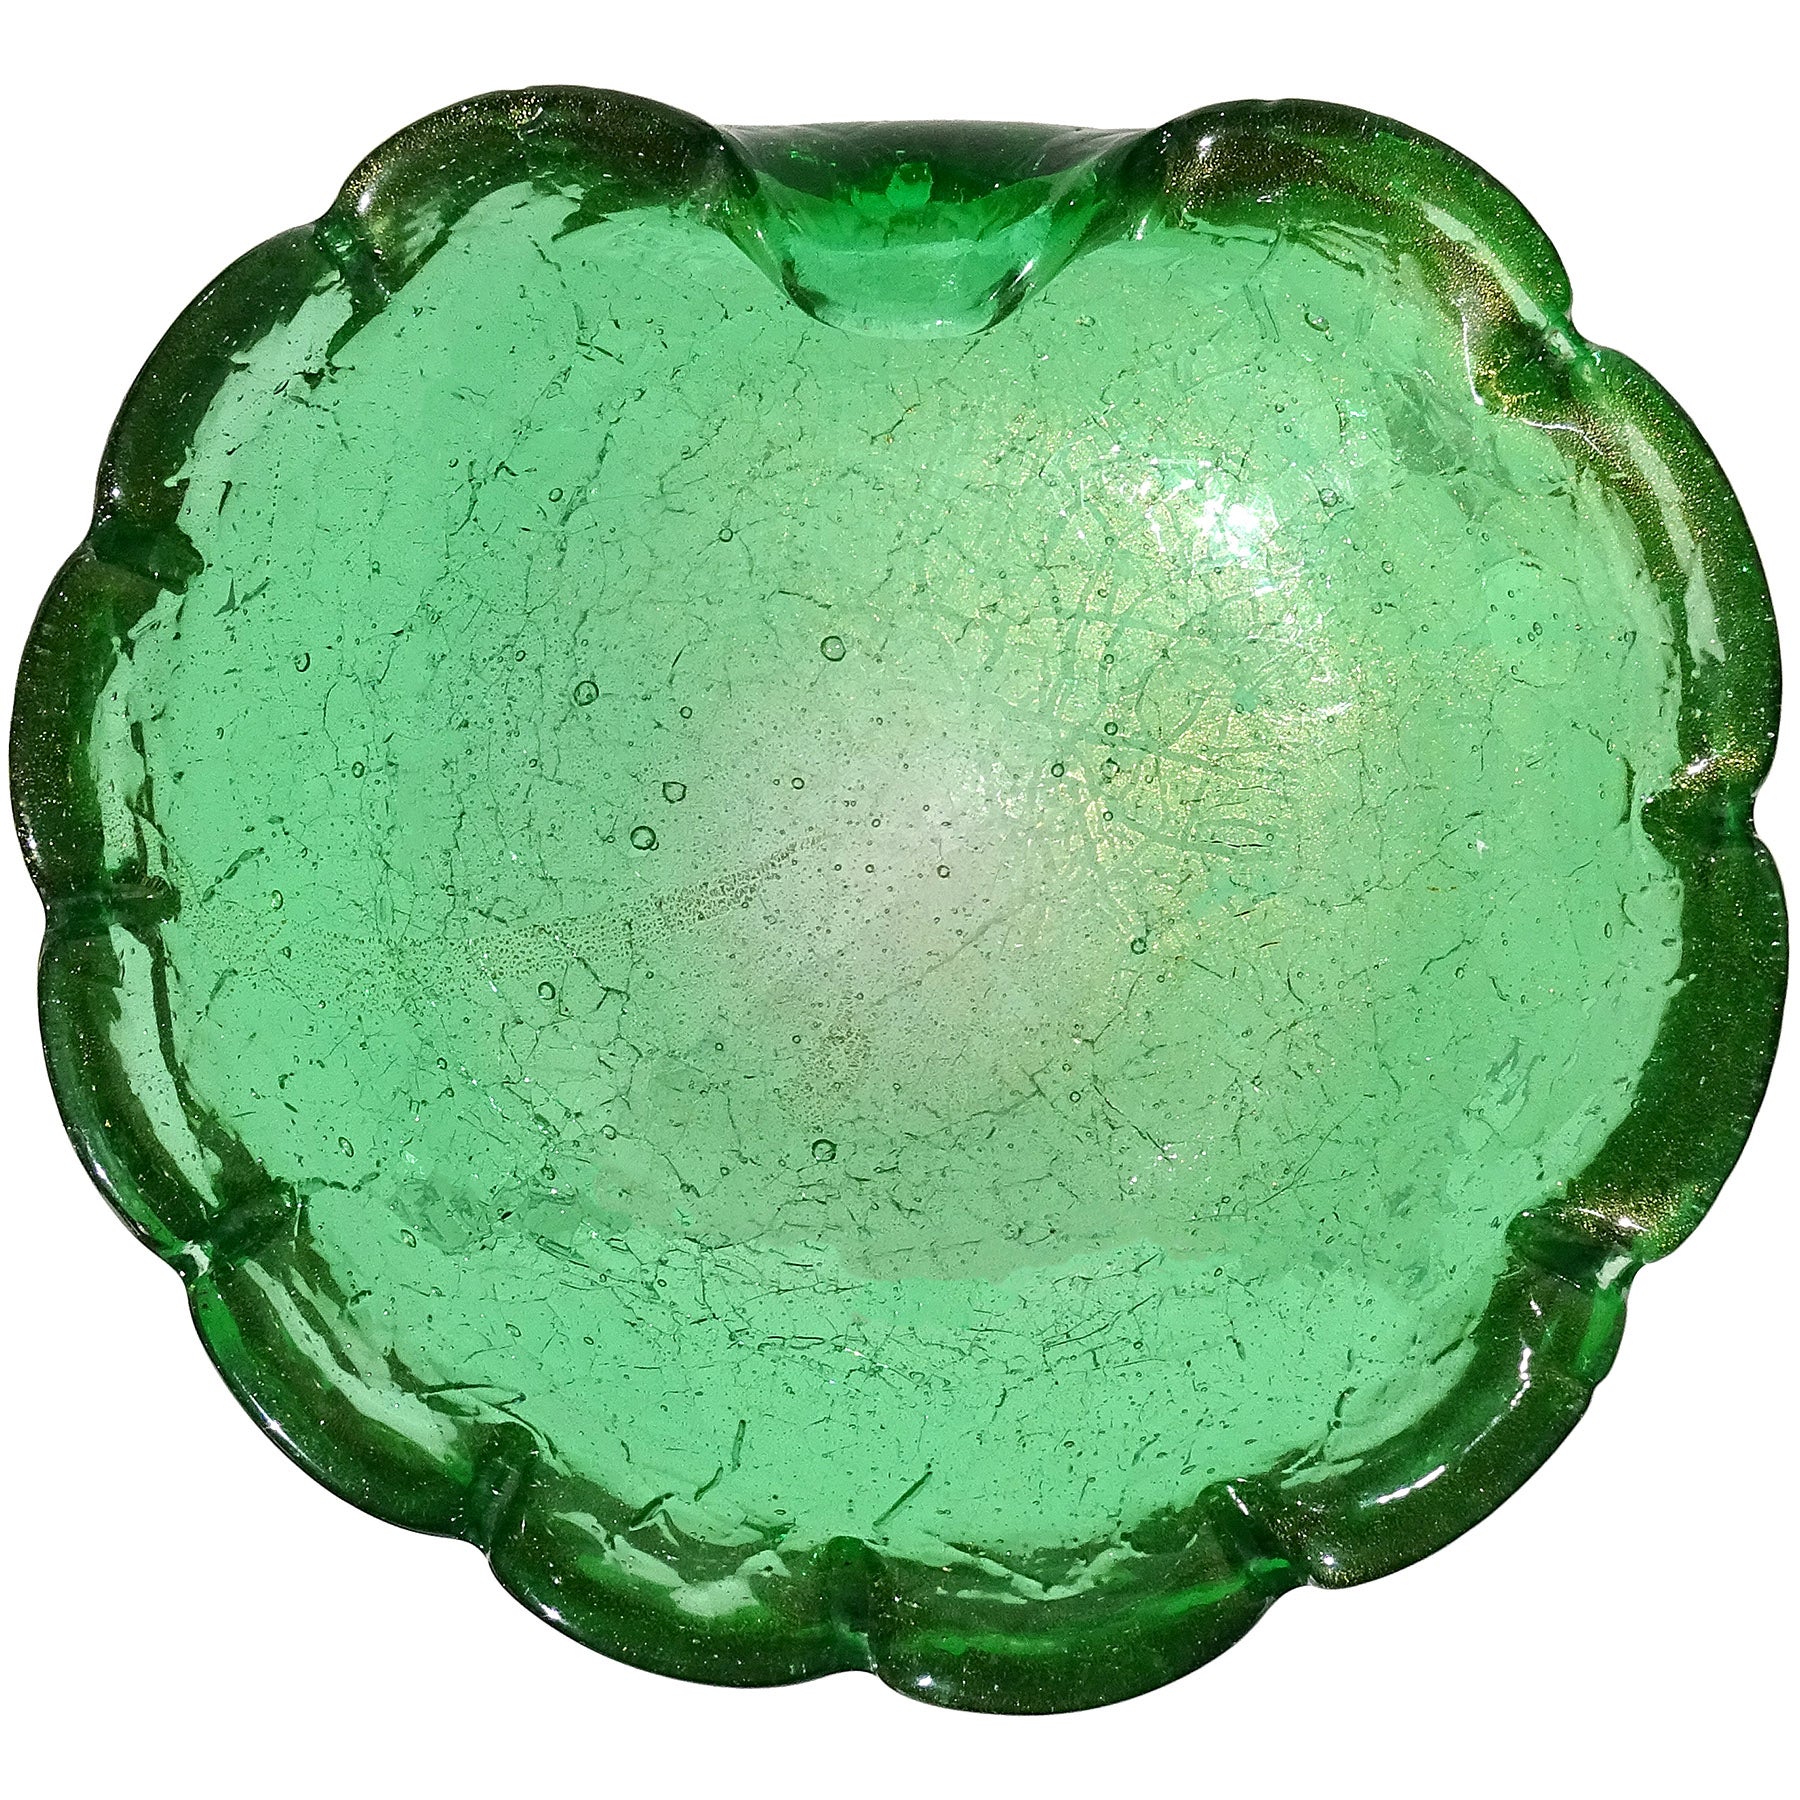 Murano Green Crackle Surface Gold Flecks Italian Art Glass Decorative Dish Bowl